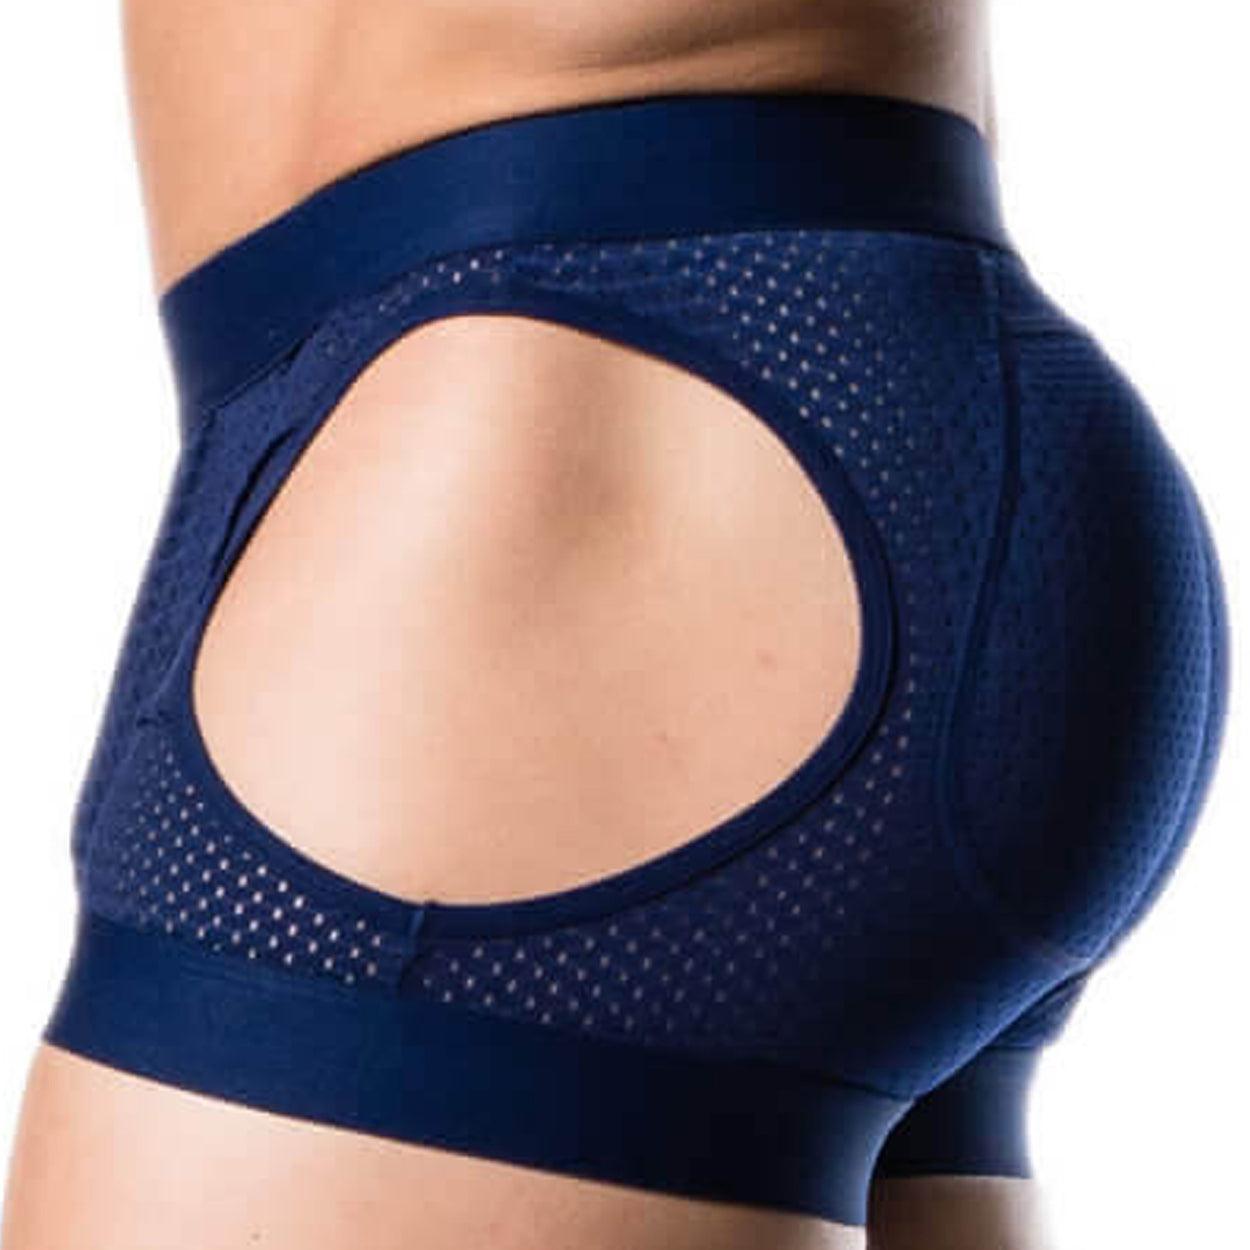 Hipsters Underwear – Butt Booster LLC